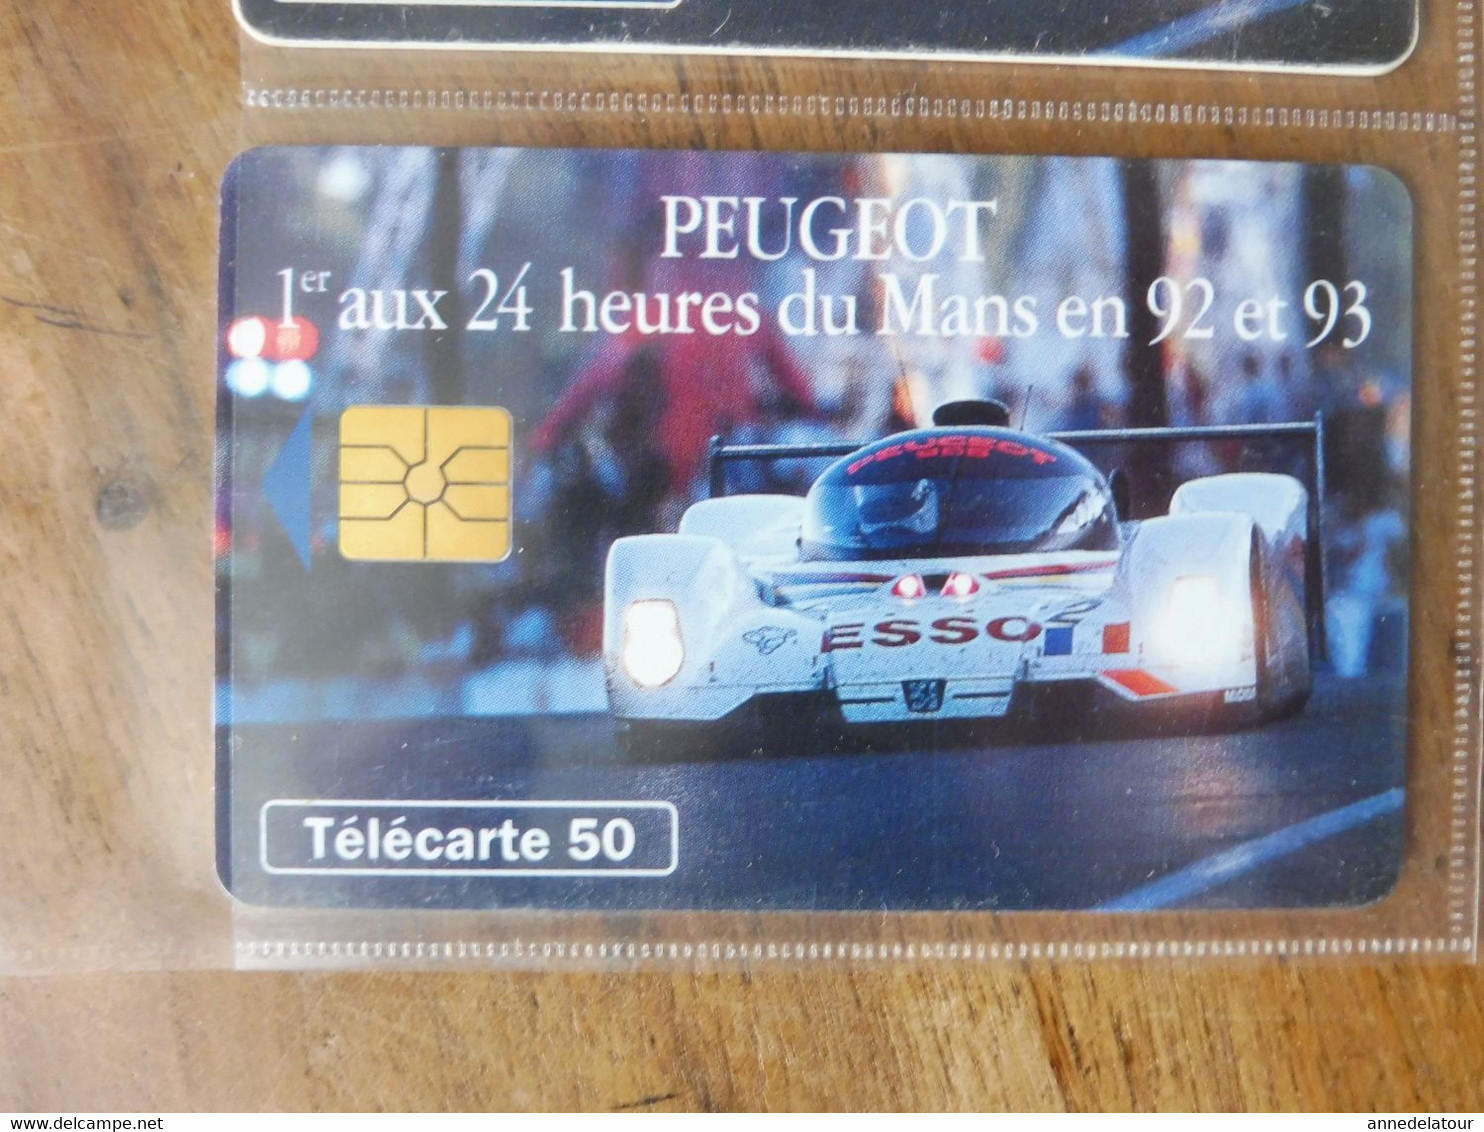 10 télécartes (automobiles de courses des 24 heures du Mans)  FRANCE TELECOM -->  PEUGEOT se bat pour ESSO